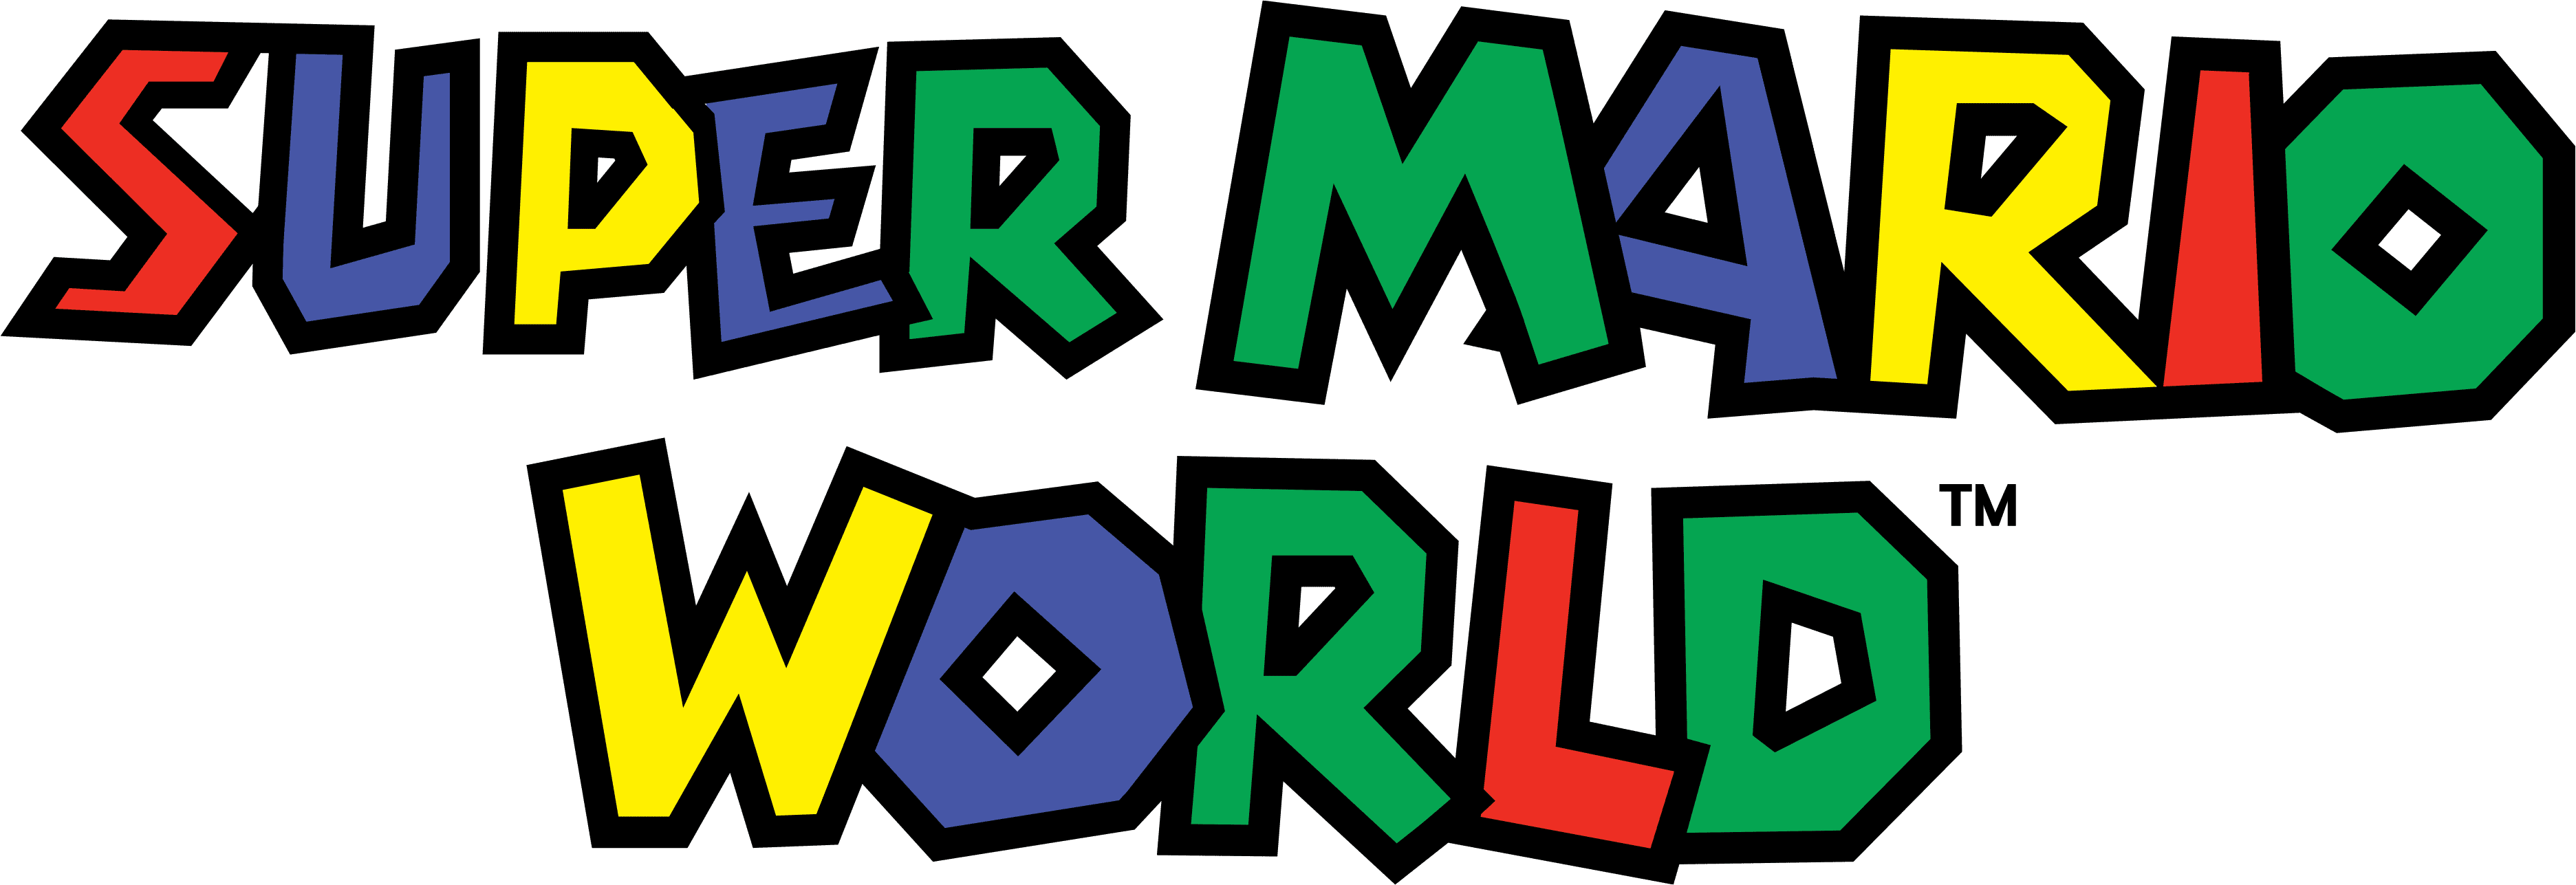 Super Mario World logo